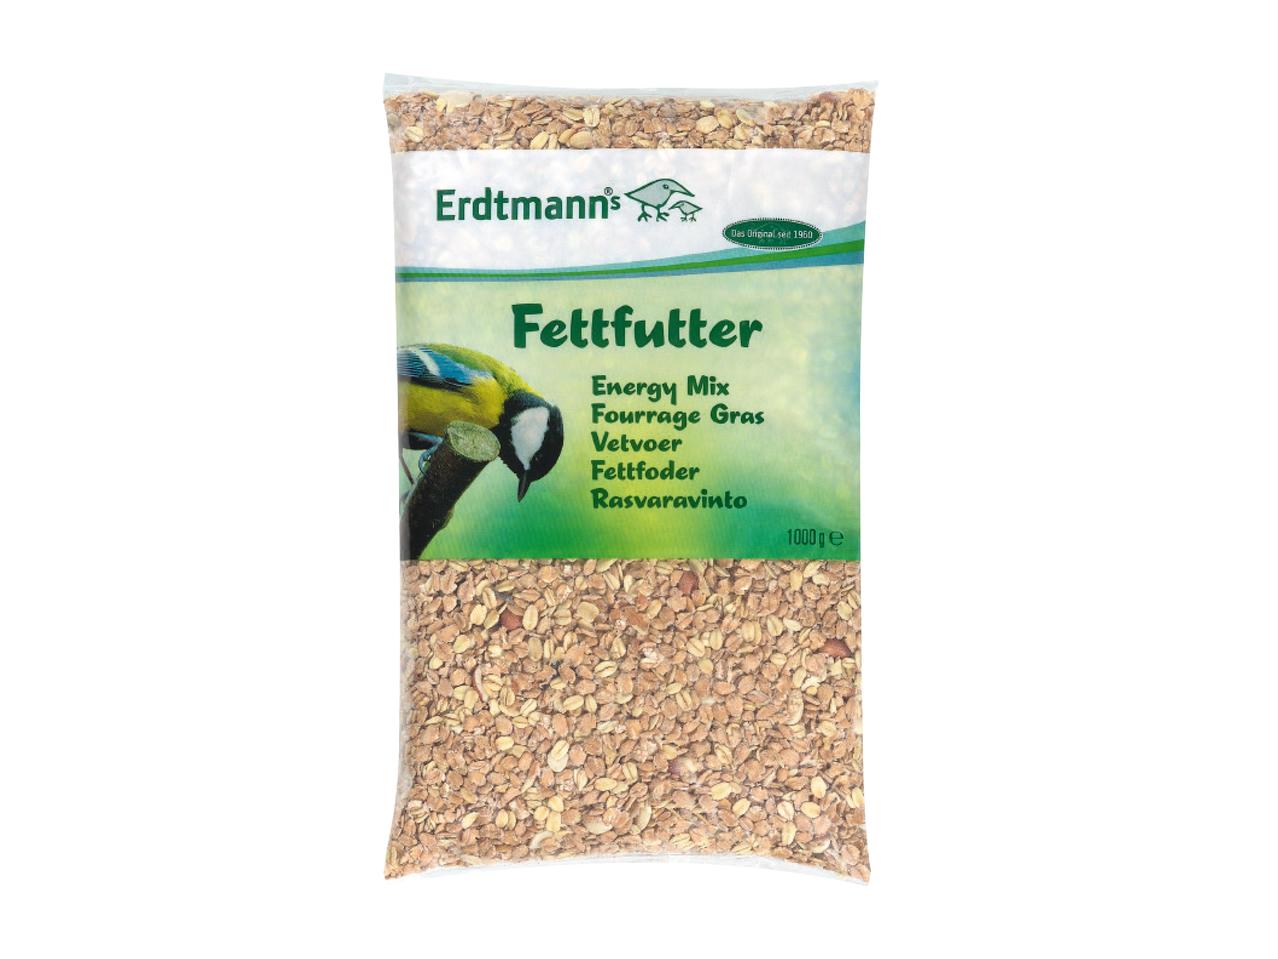 ERDTMANN(R) Energy Mix (Fettfutter)